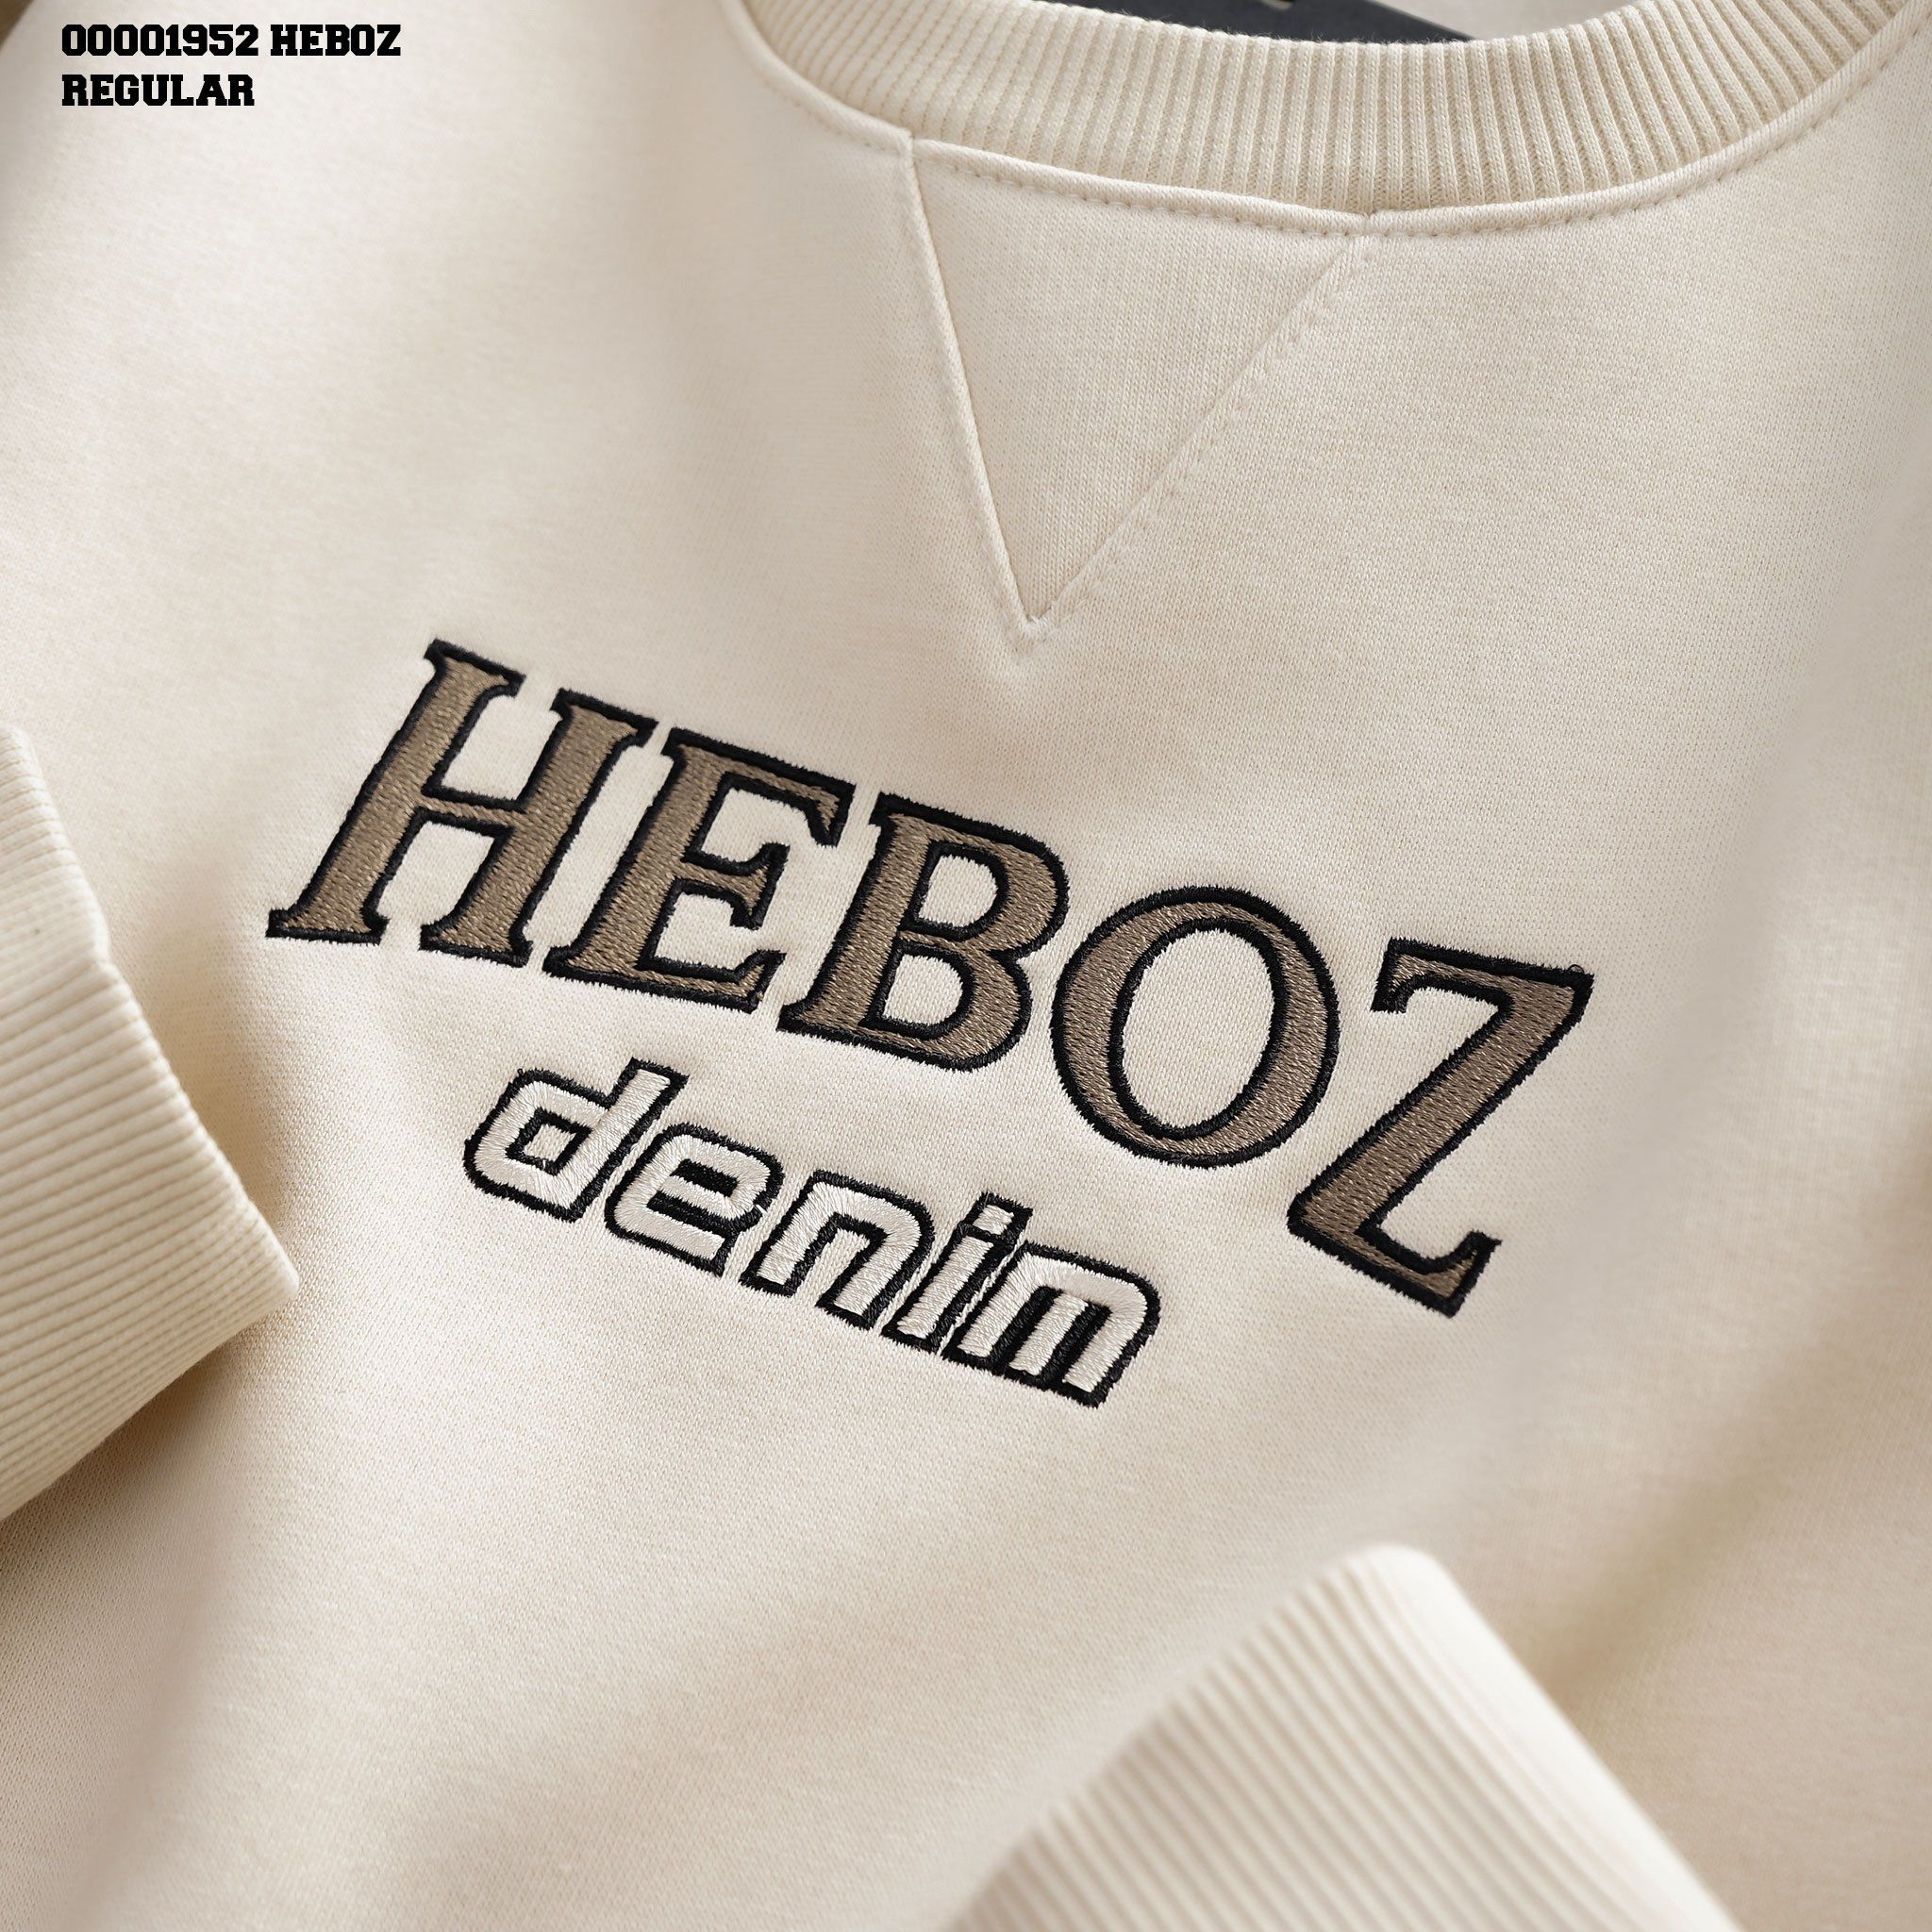  Áo sweater nỉ bông phối màu Heboz 2M - 00001952 